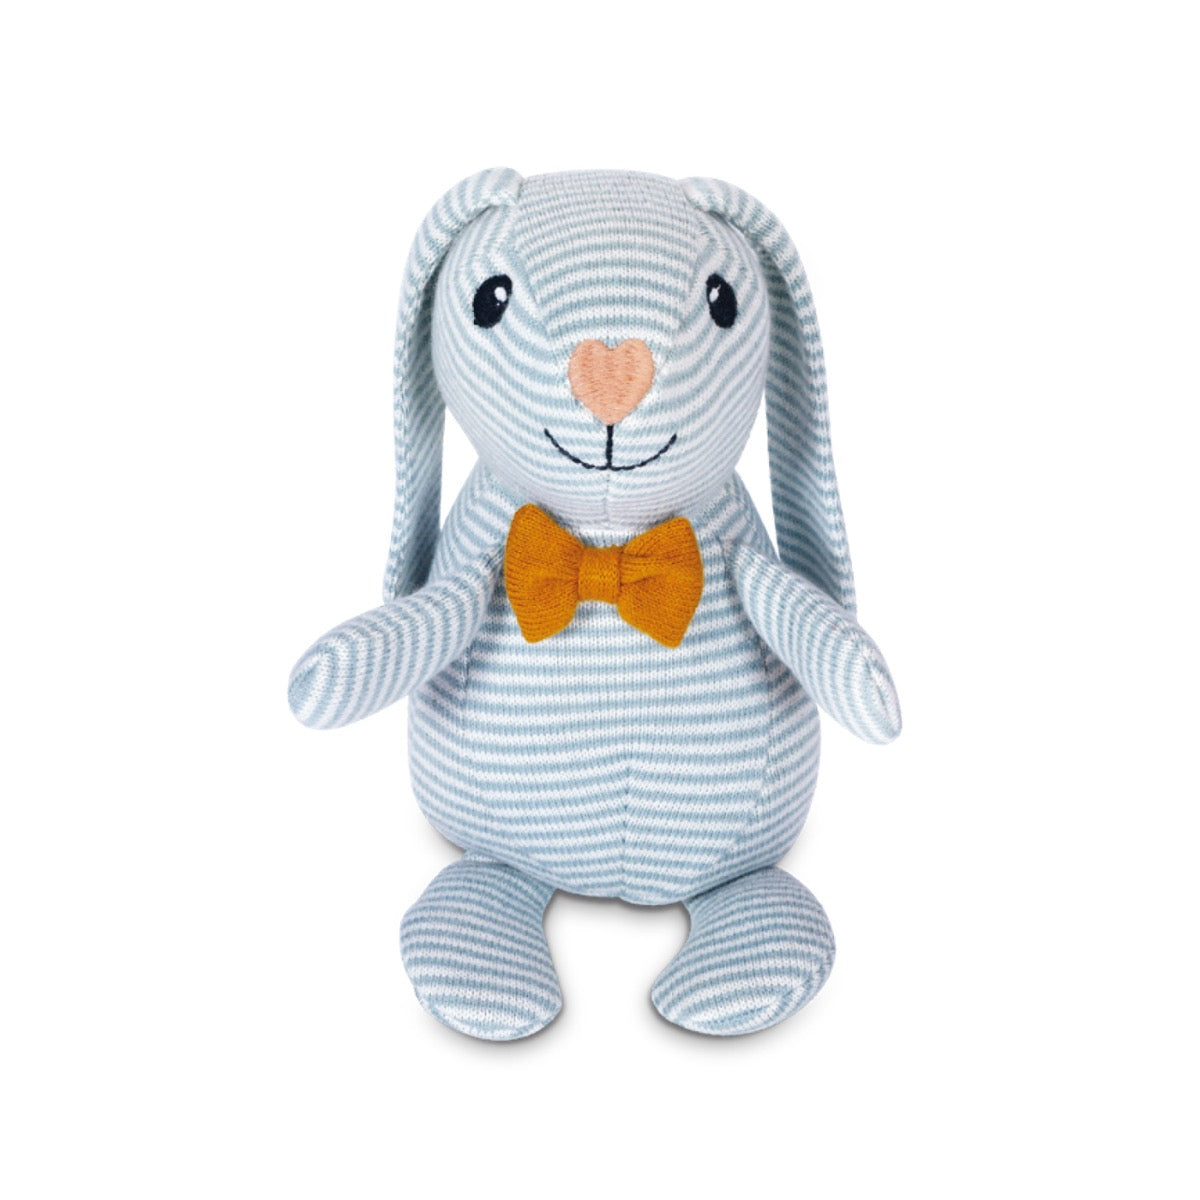 Knit Patterned Bunny Plush - Dapper Bunny